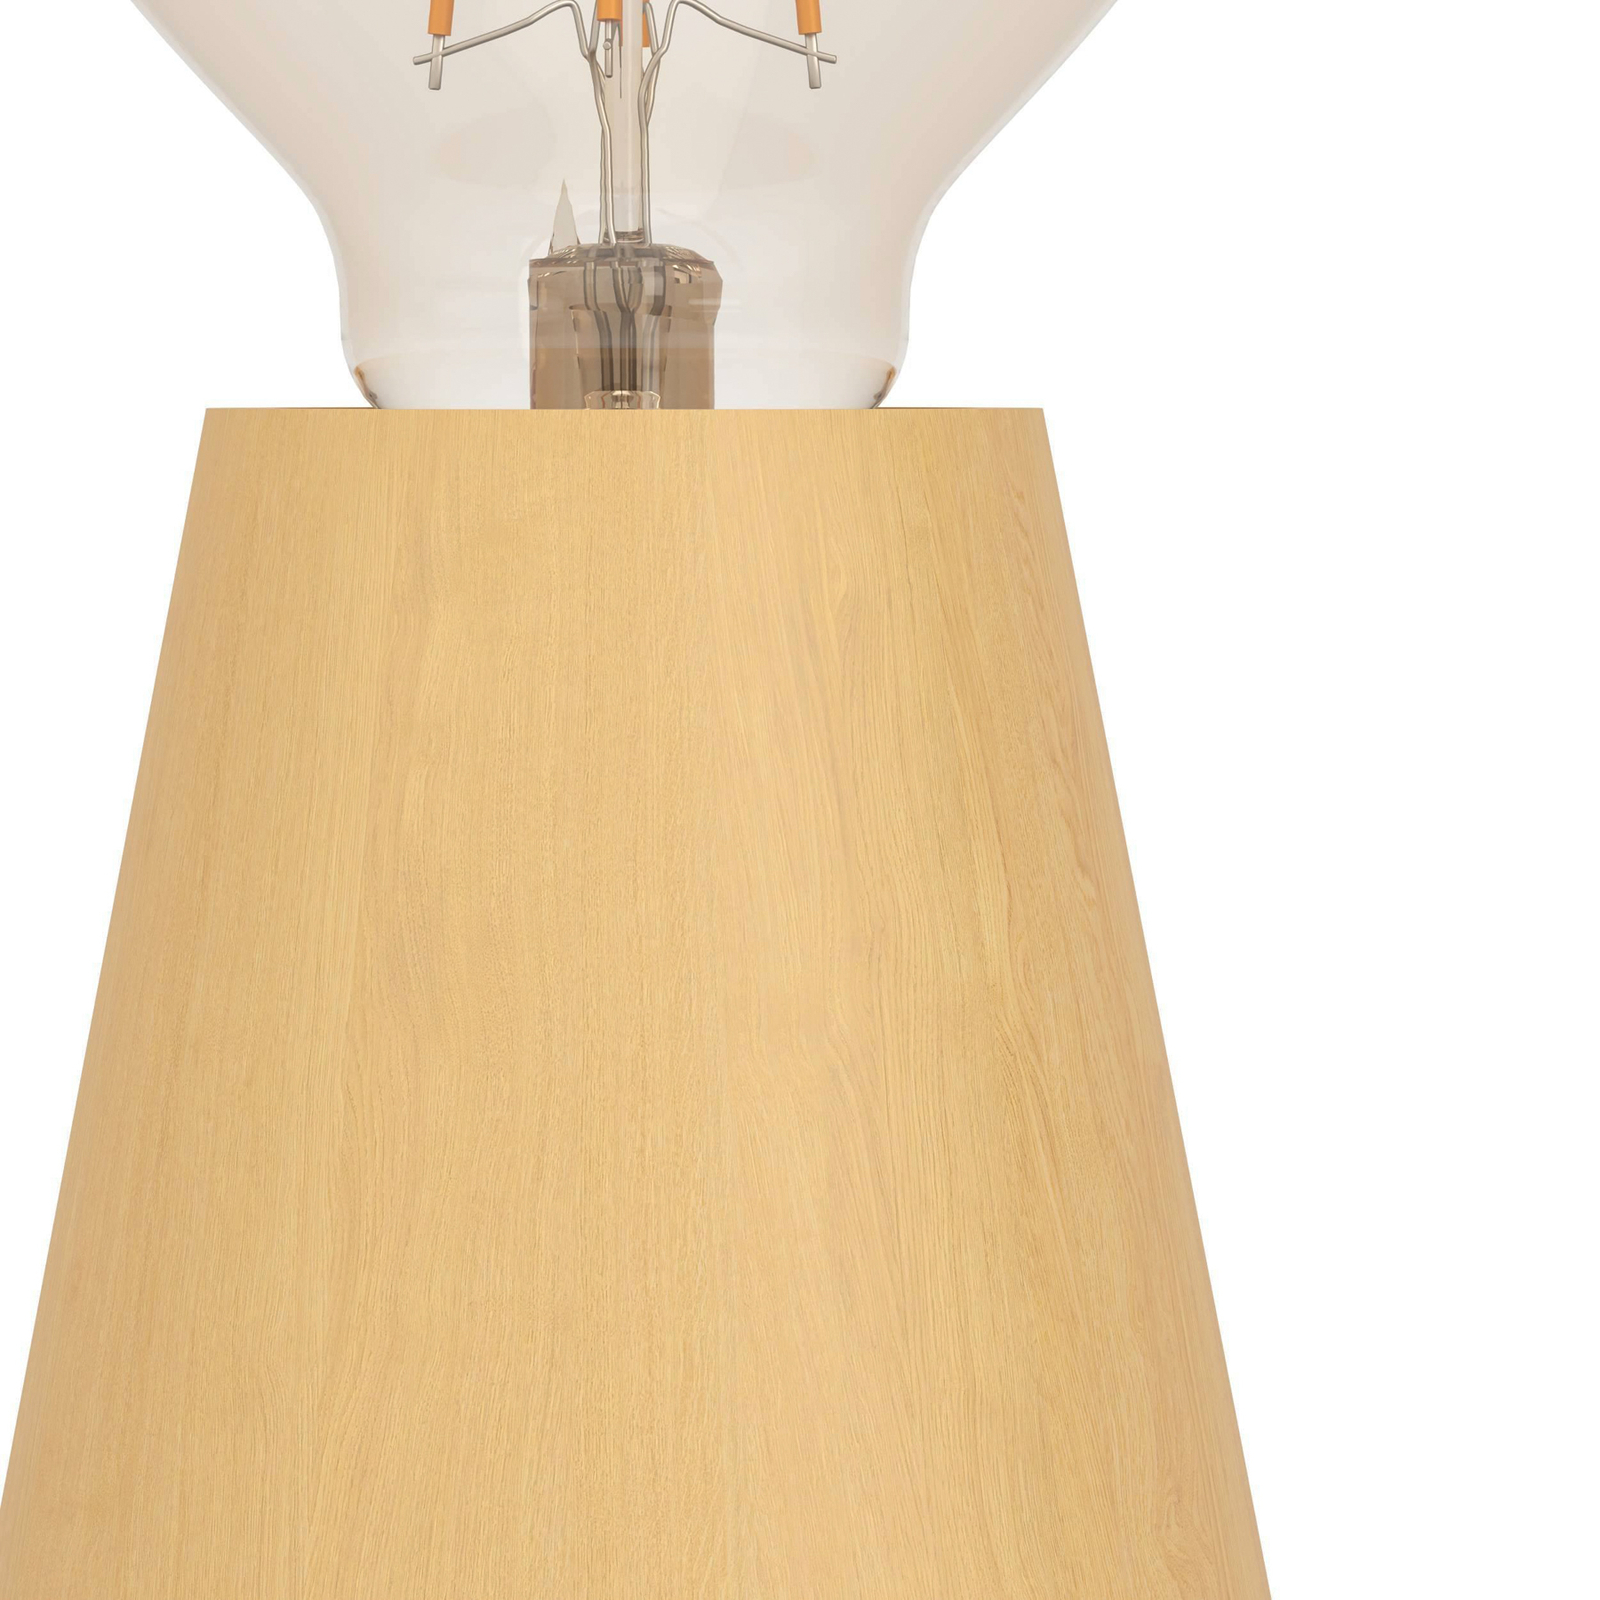 Stolná lampa Asby, svetlé drevo, výška 10 cm, drevo